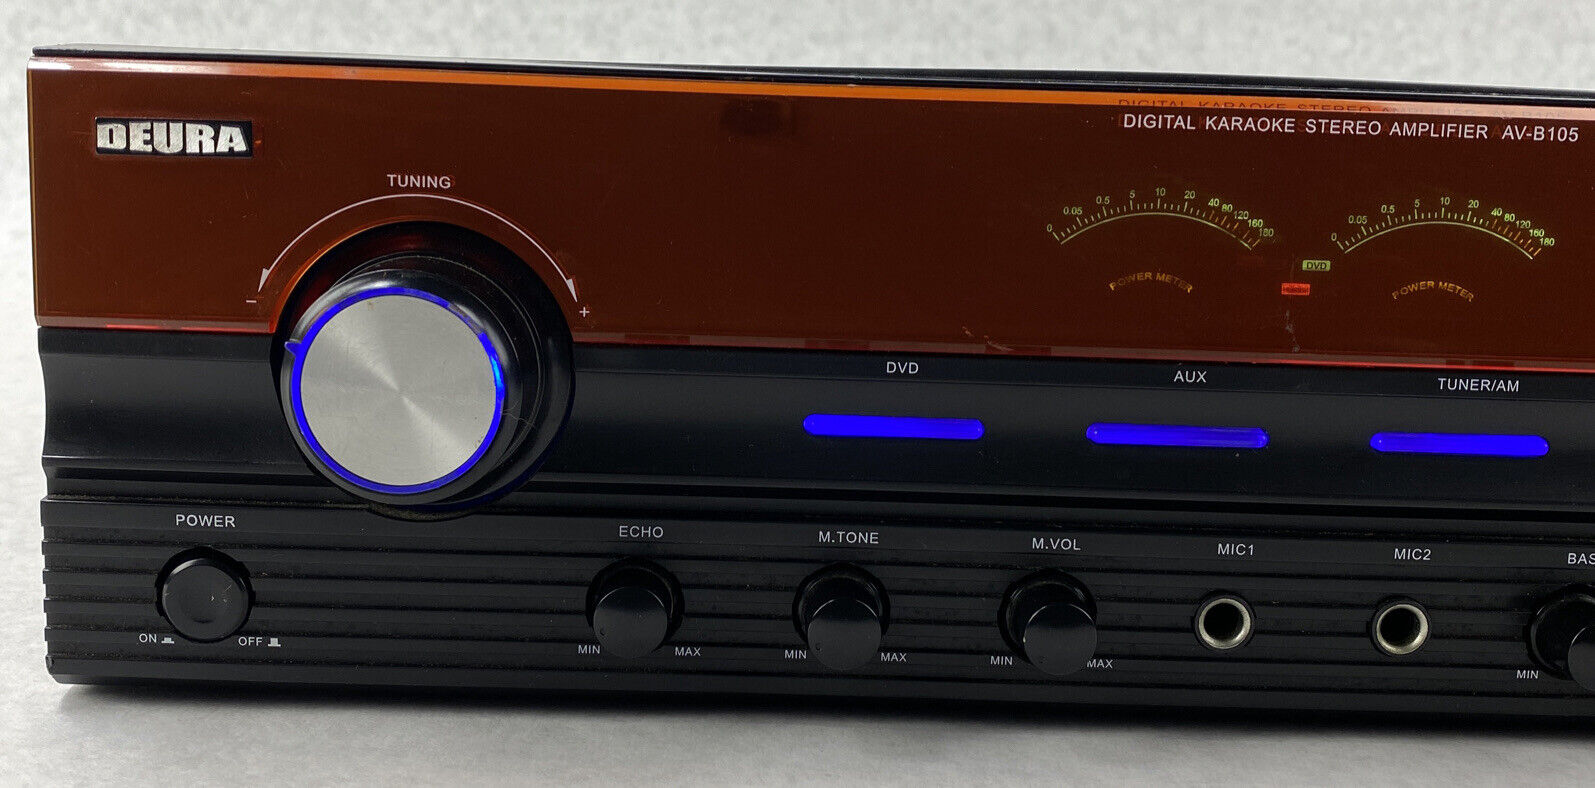 Deura AV-B105 Digital Karaoke Stereo Amplifier